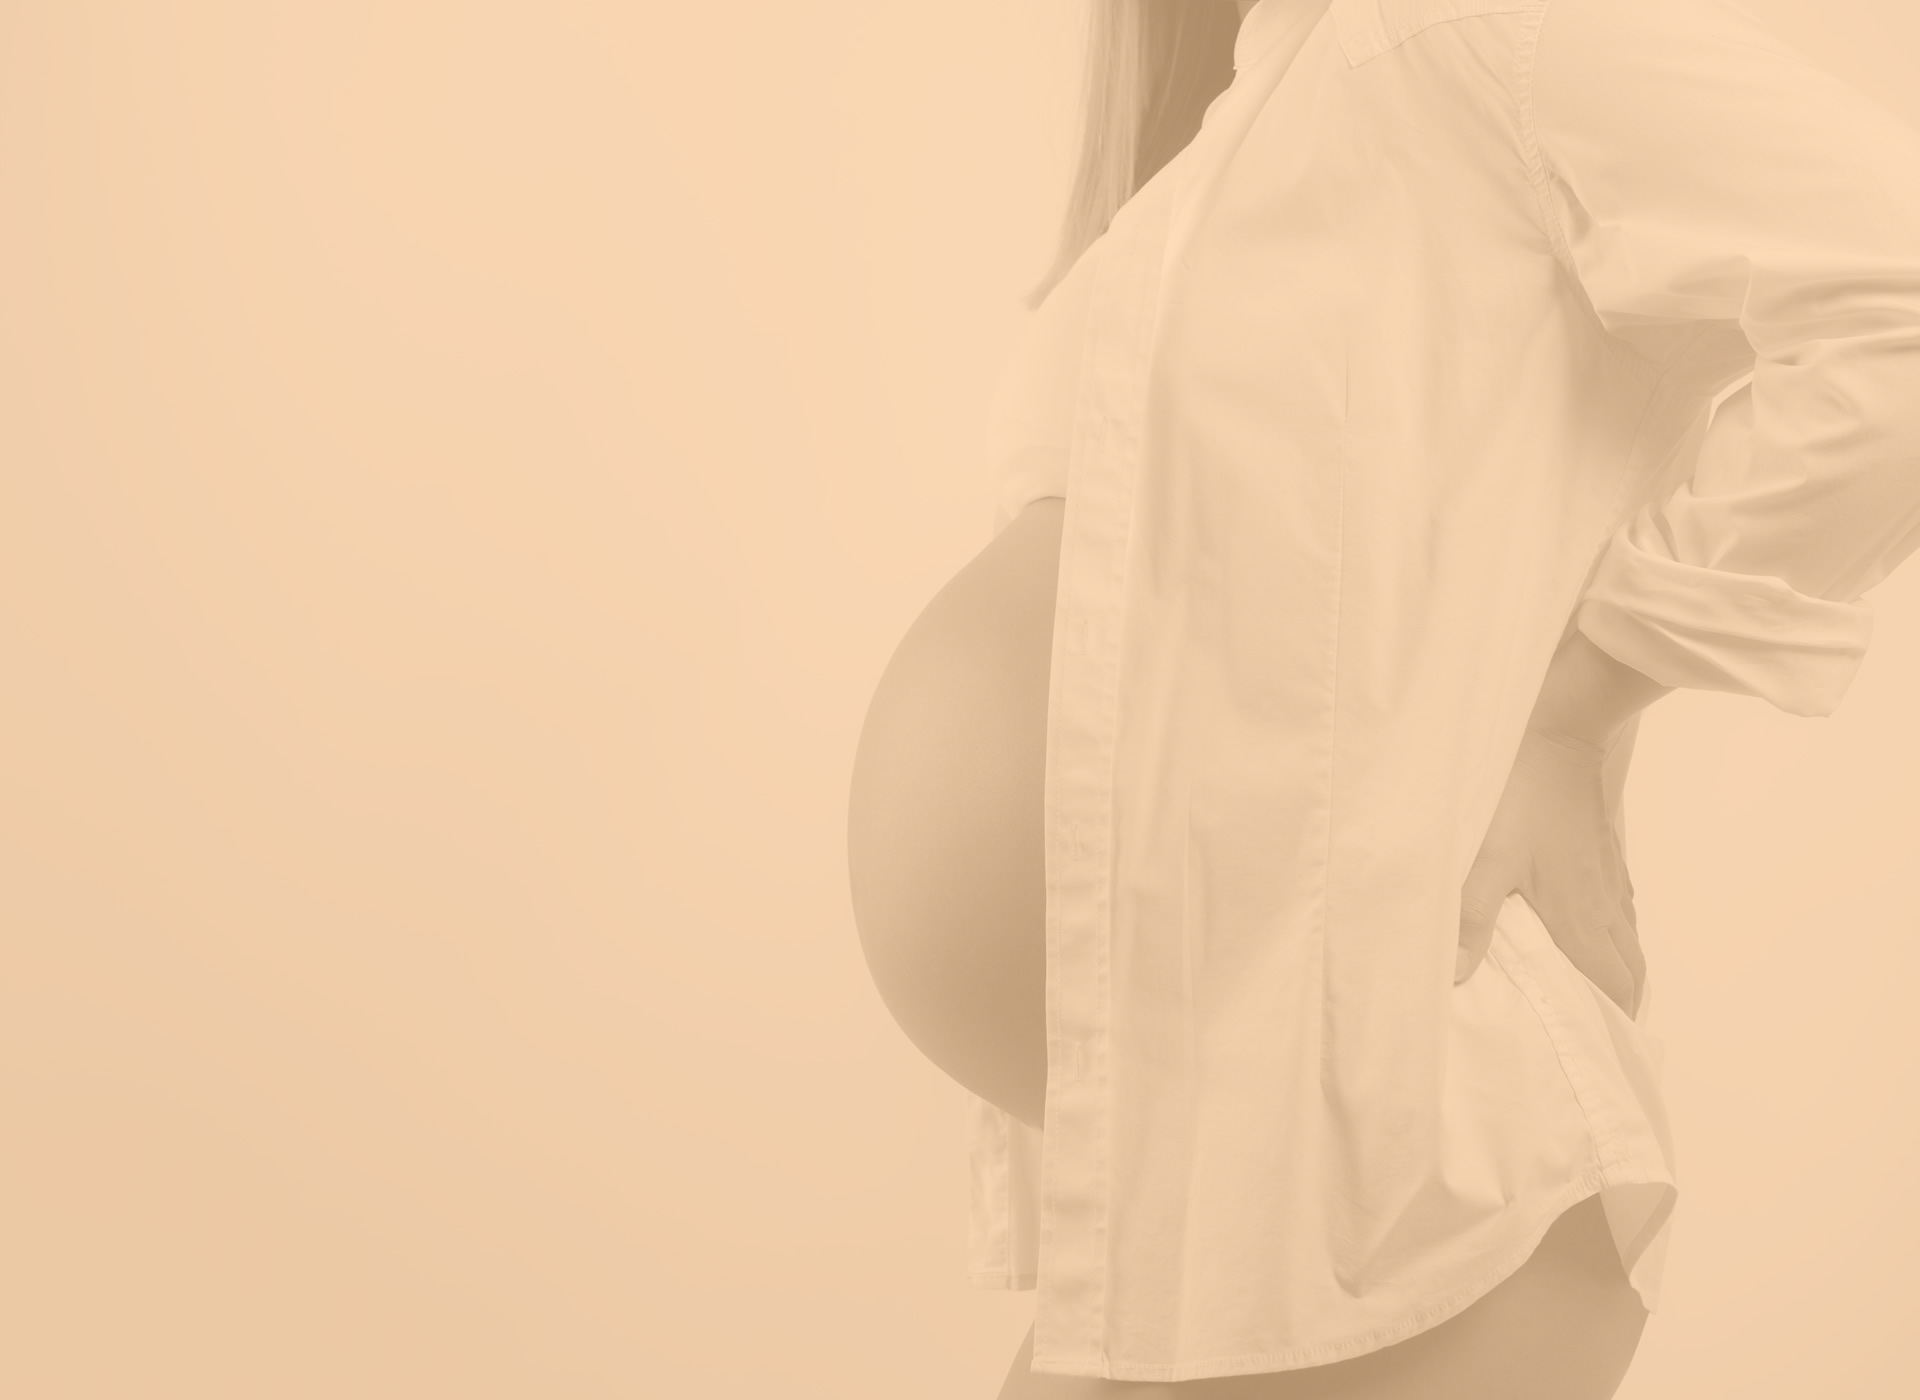 cabinet d'ostéopathie sur Annecy, ostéopathe diplôme agréé par le ministère de la santé, spécialisé dans les femmes enceintes, suivi de grossesse, préparation à l'accouchement en ostéopathie, prise en charge et soins des nourrissons, rendez-vous rapide, urgences ostéopathiques